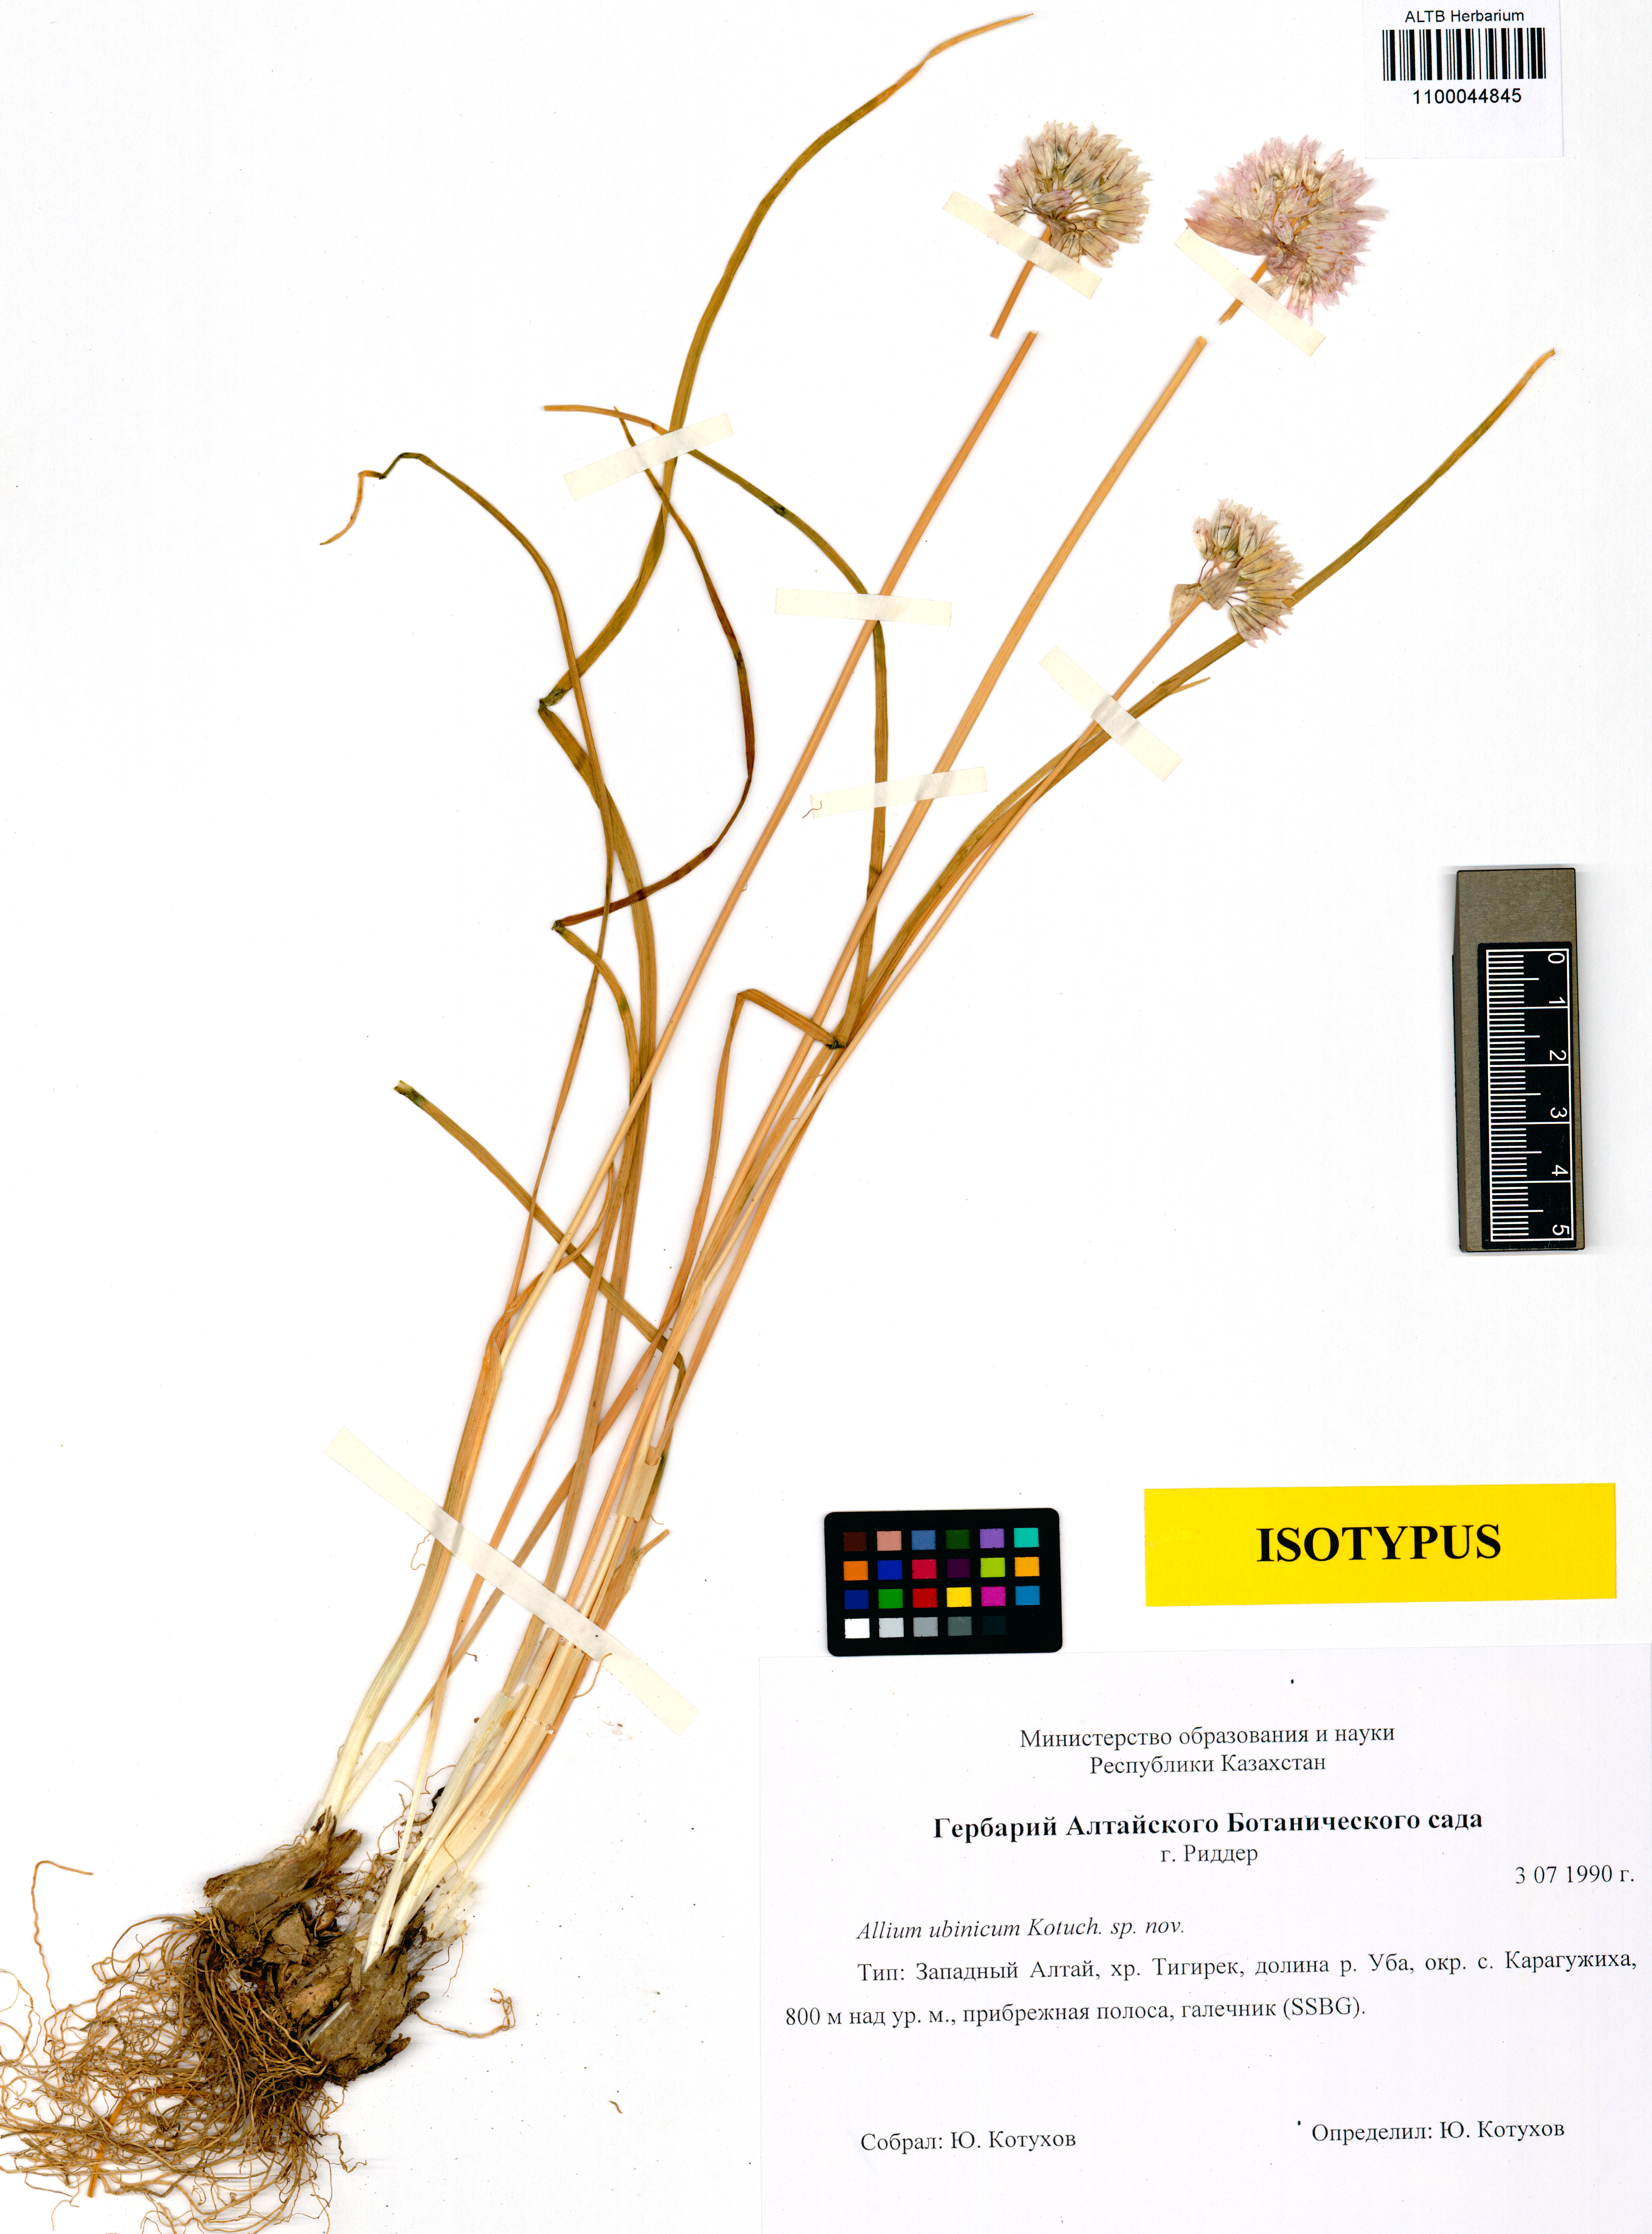 Alliaceae,Allium ubinicum Kotukhov